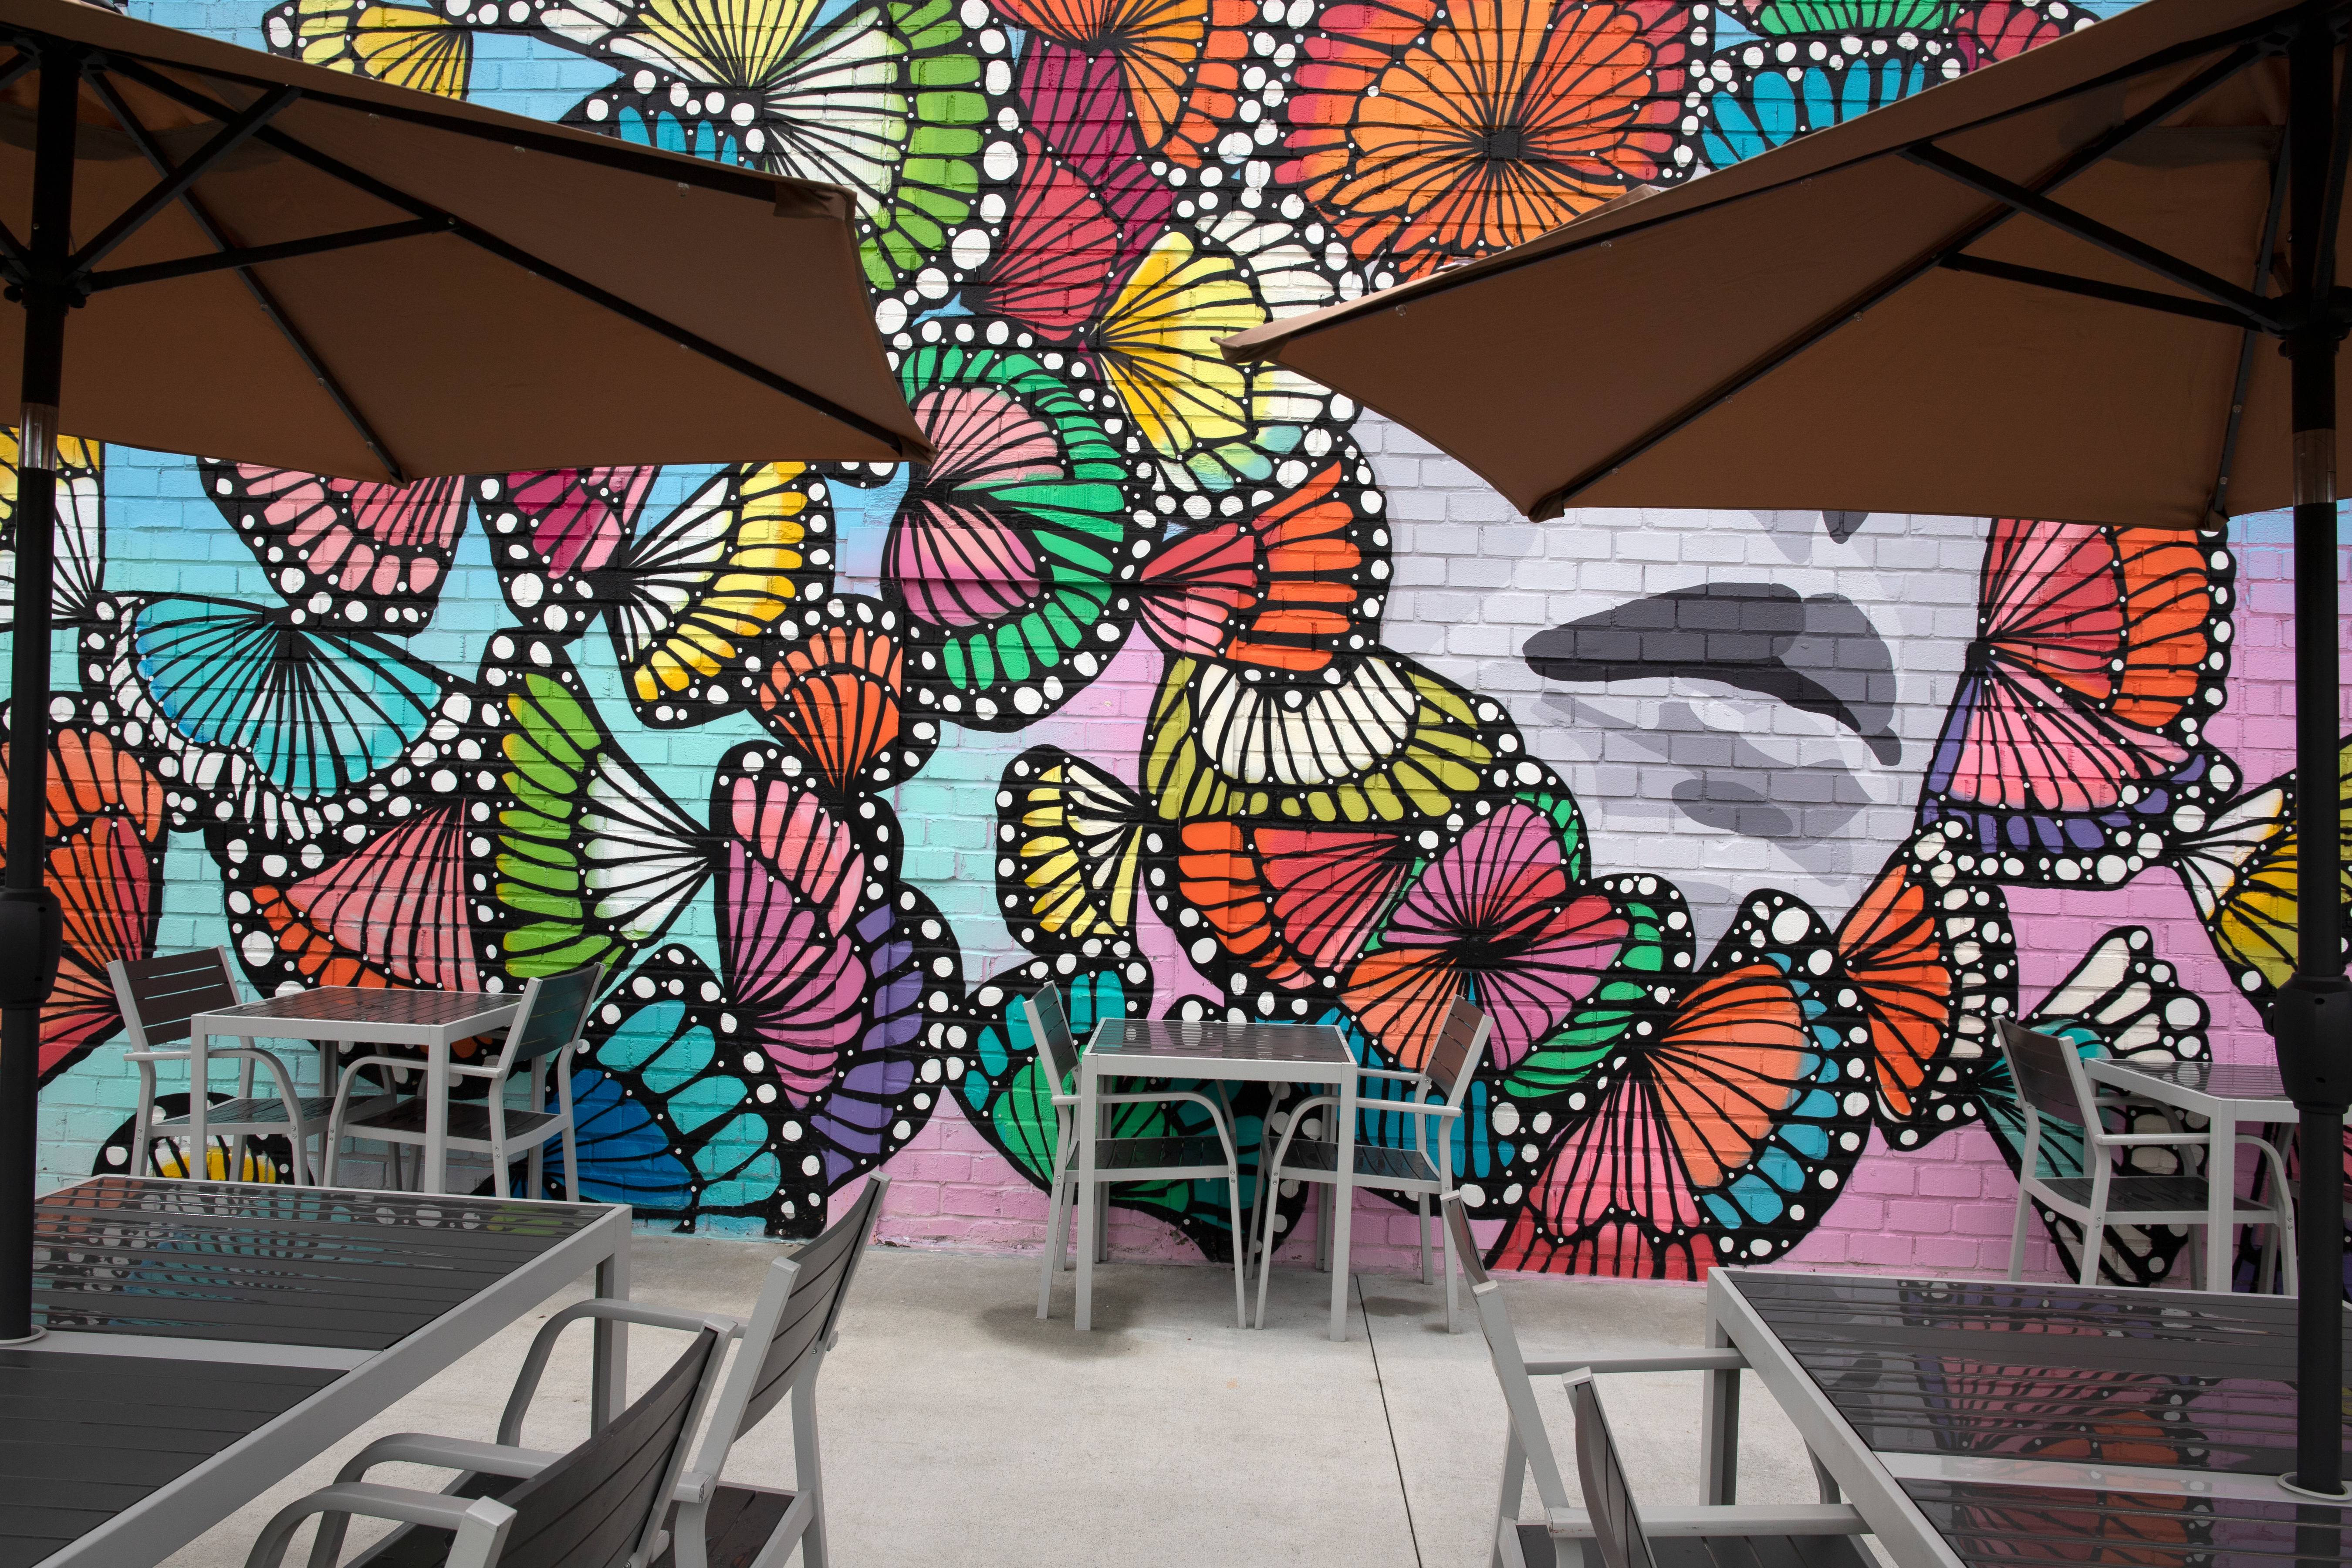 Colorful Mural and seating, Atlanta, Georgia